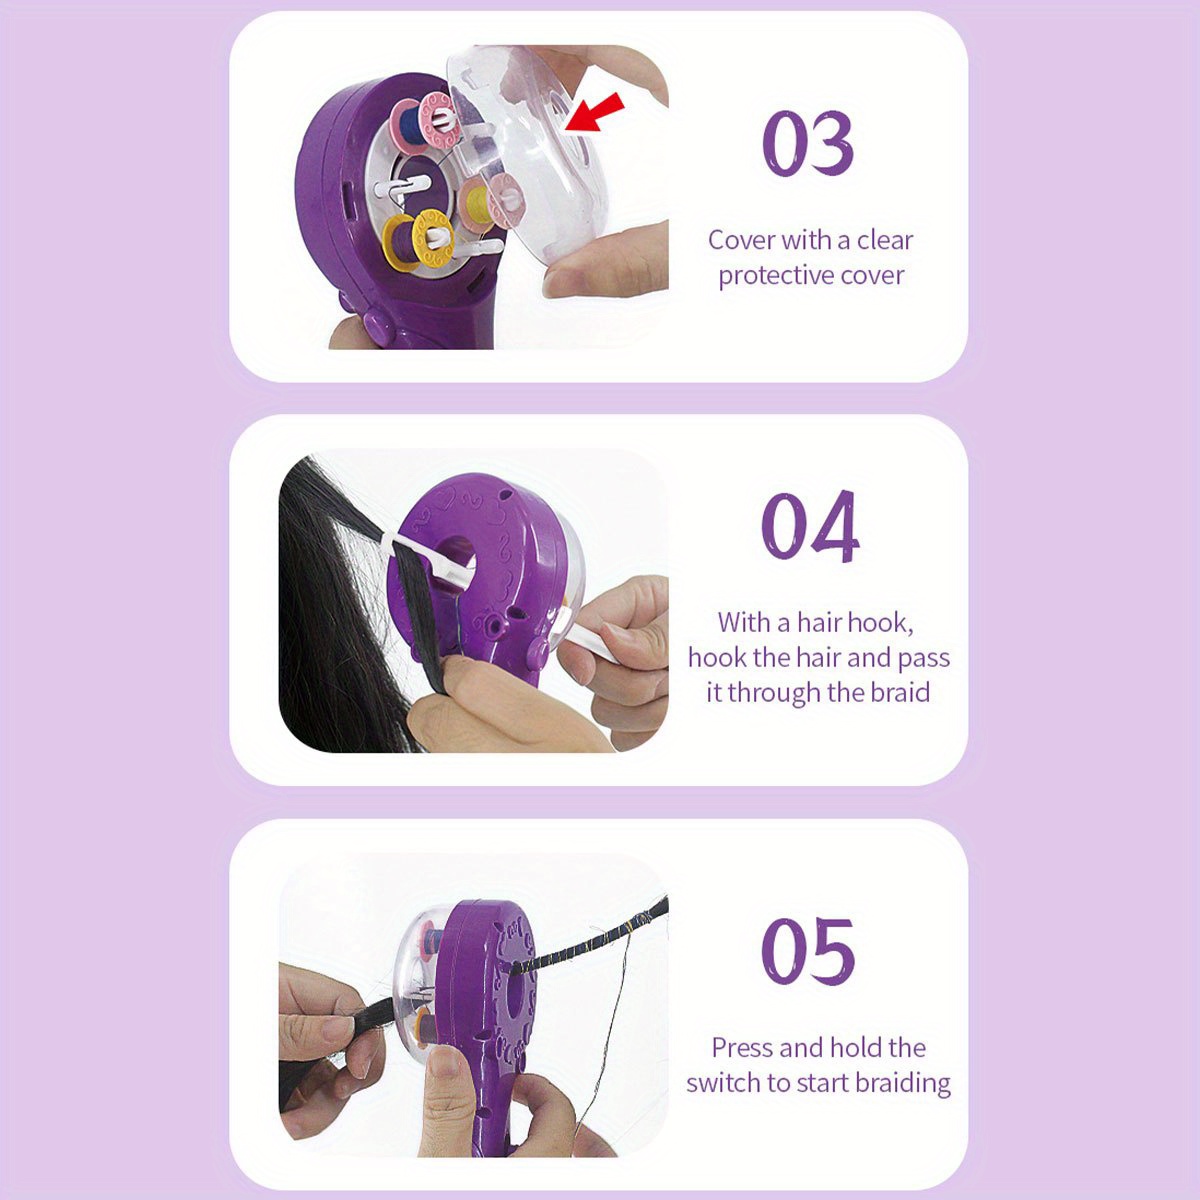 ProBrixx Hair Braiding Machine Hair Wrap Kit Hair Twister Machine,Hair  Styling DIY Convenient Twist Braid Hair Braiding Tool For Girl's Headdress